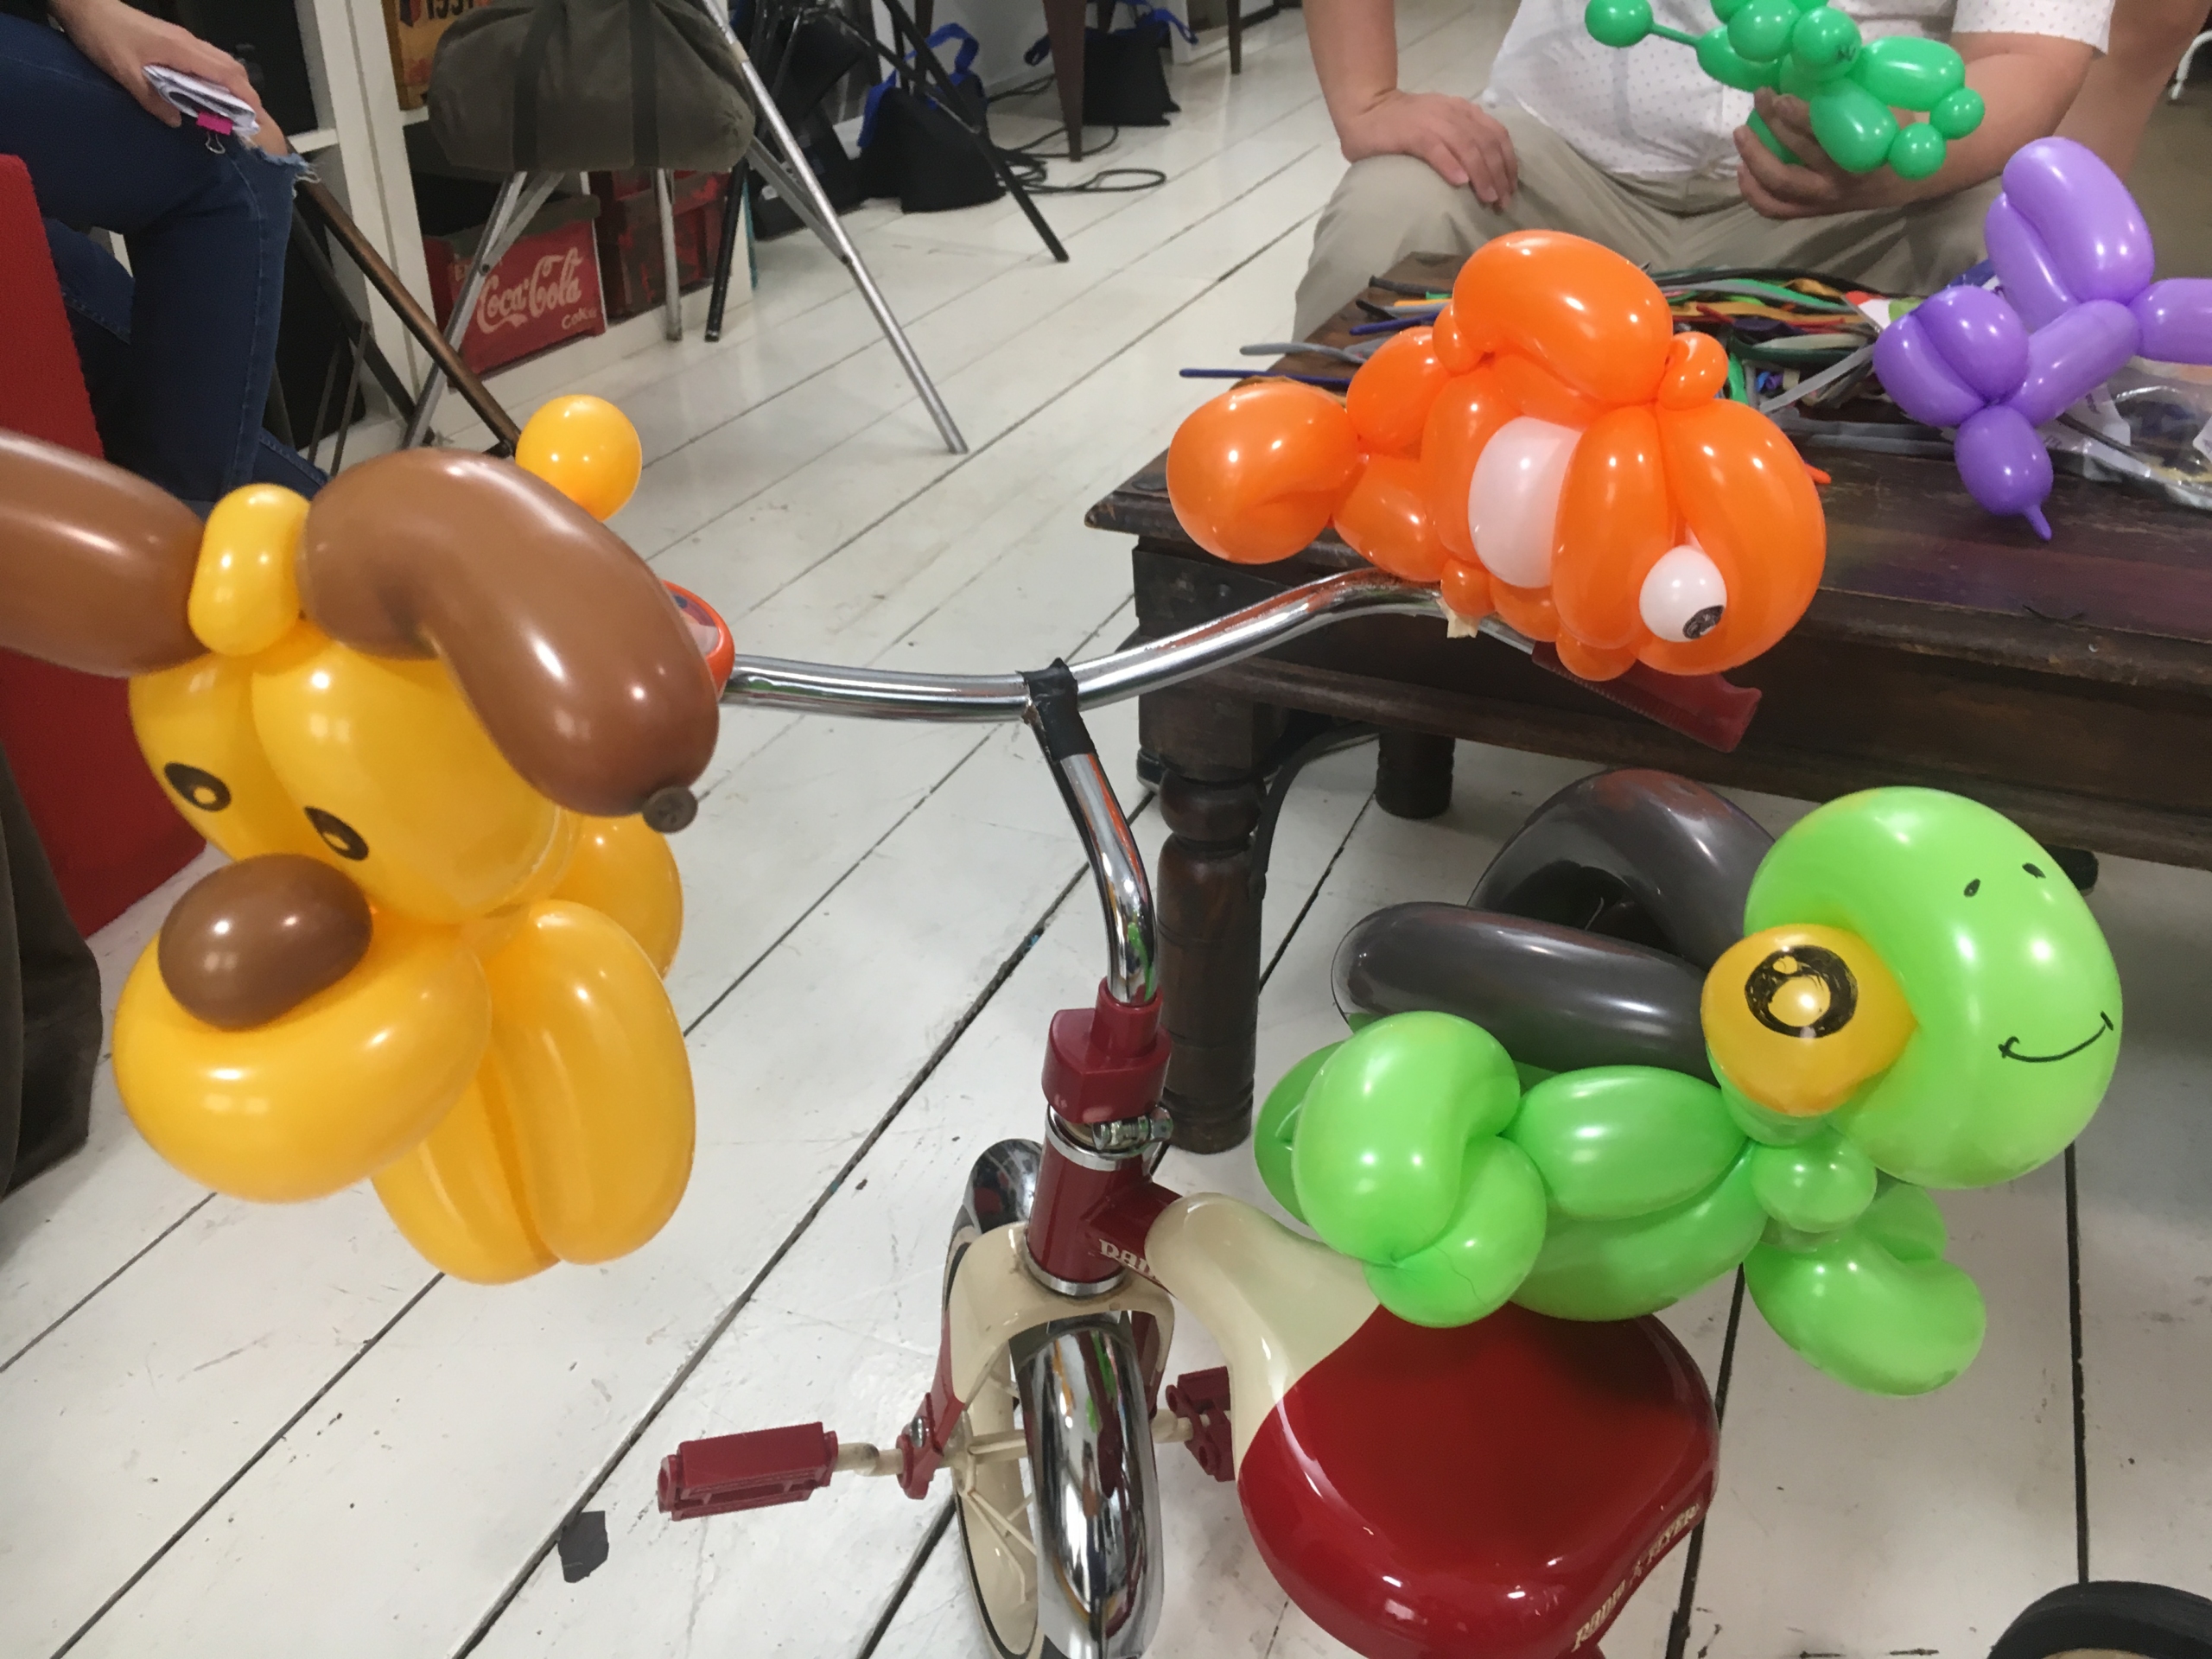 Balloon sculptures for tv drama